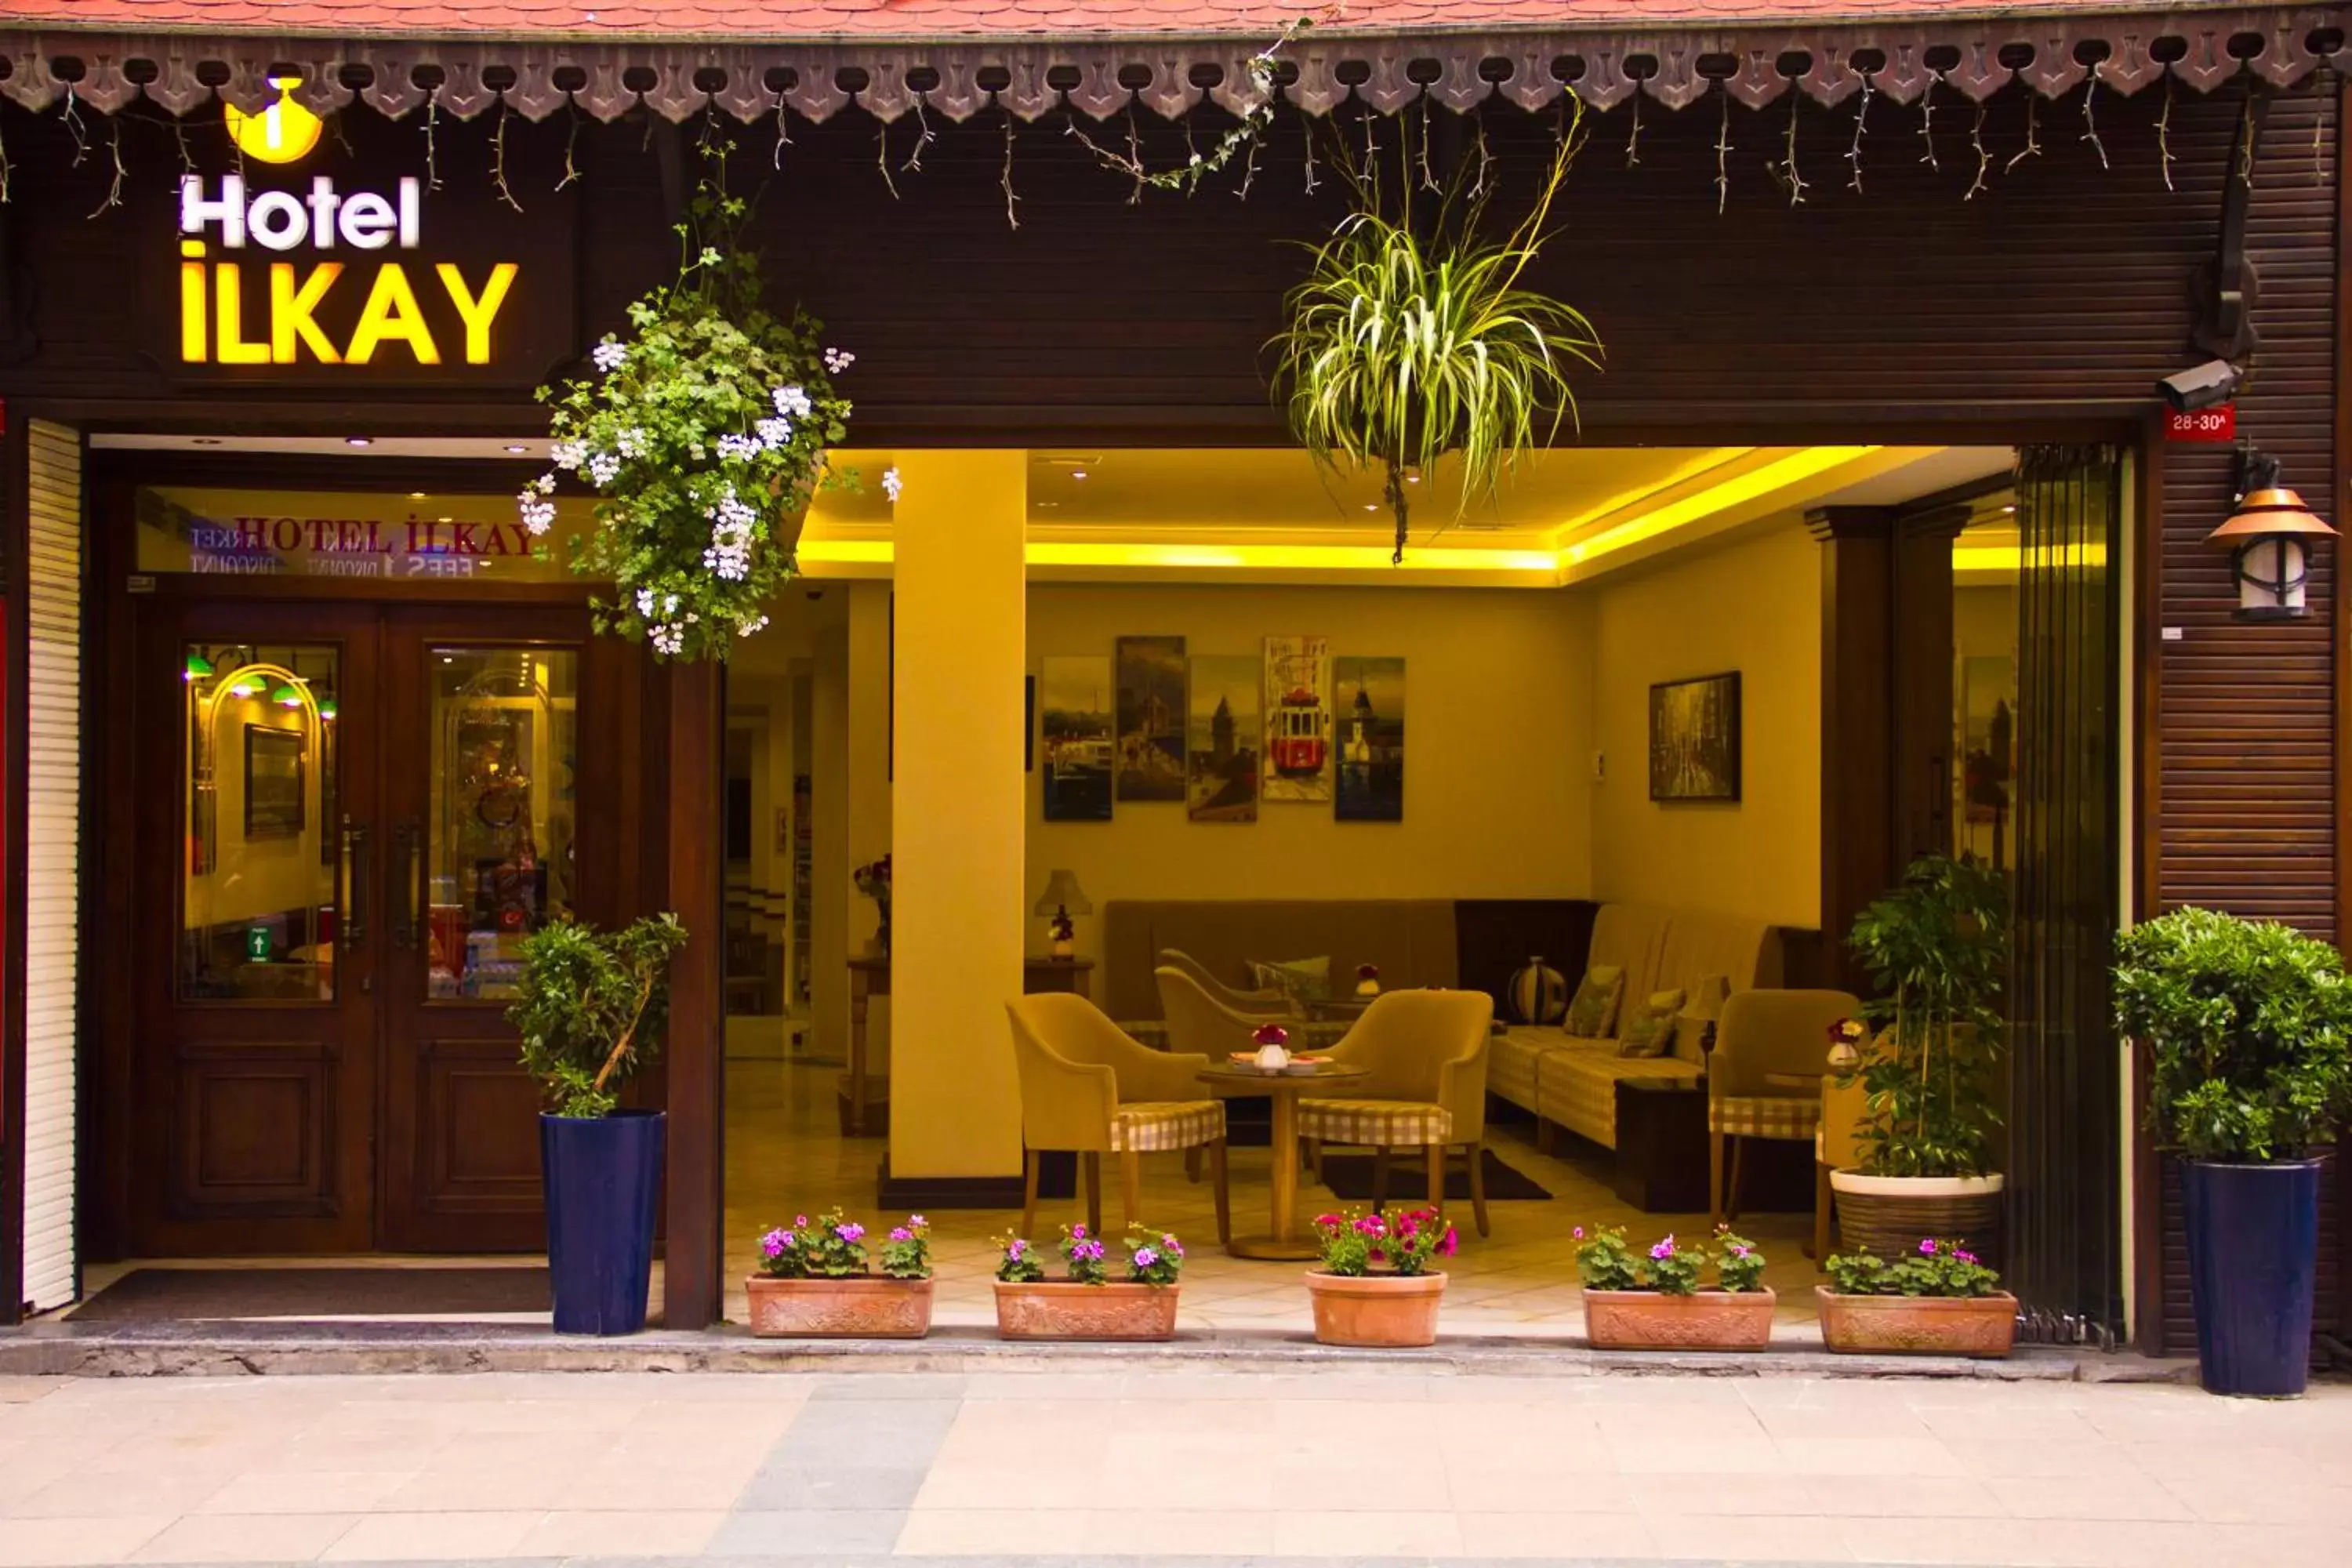 Facade/entrance in Ilkay Hotel